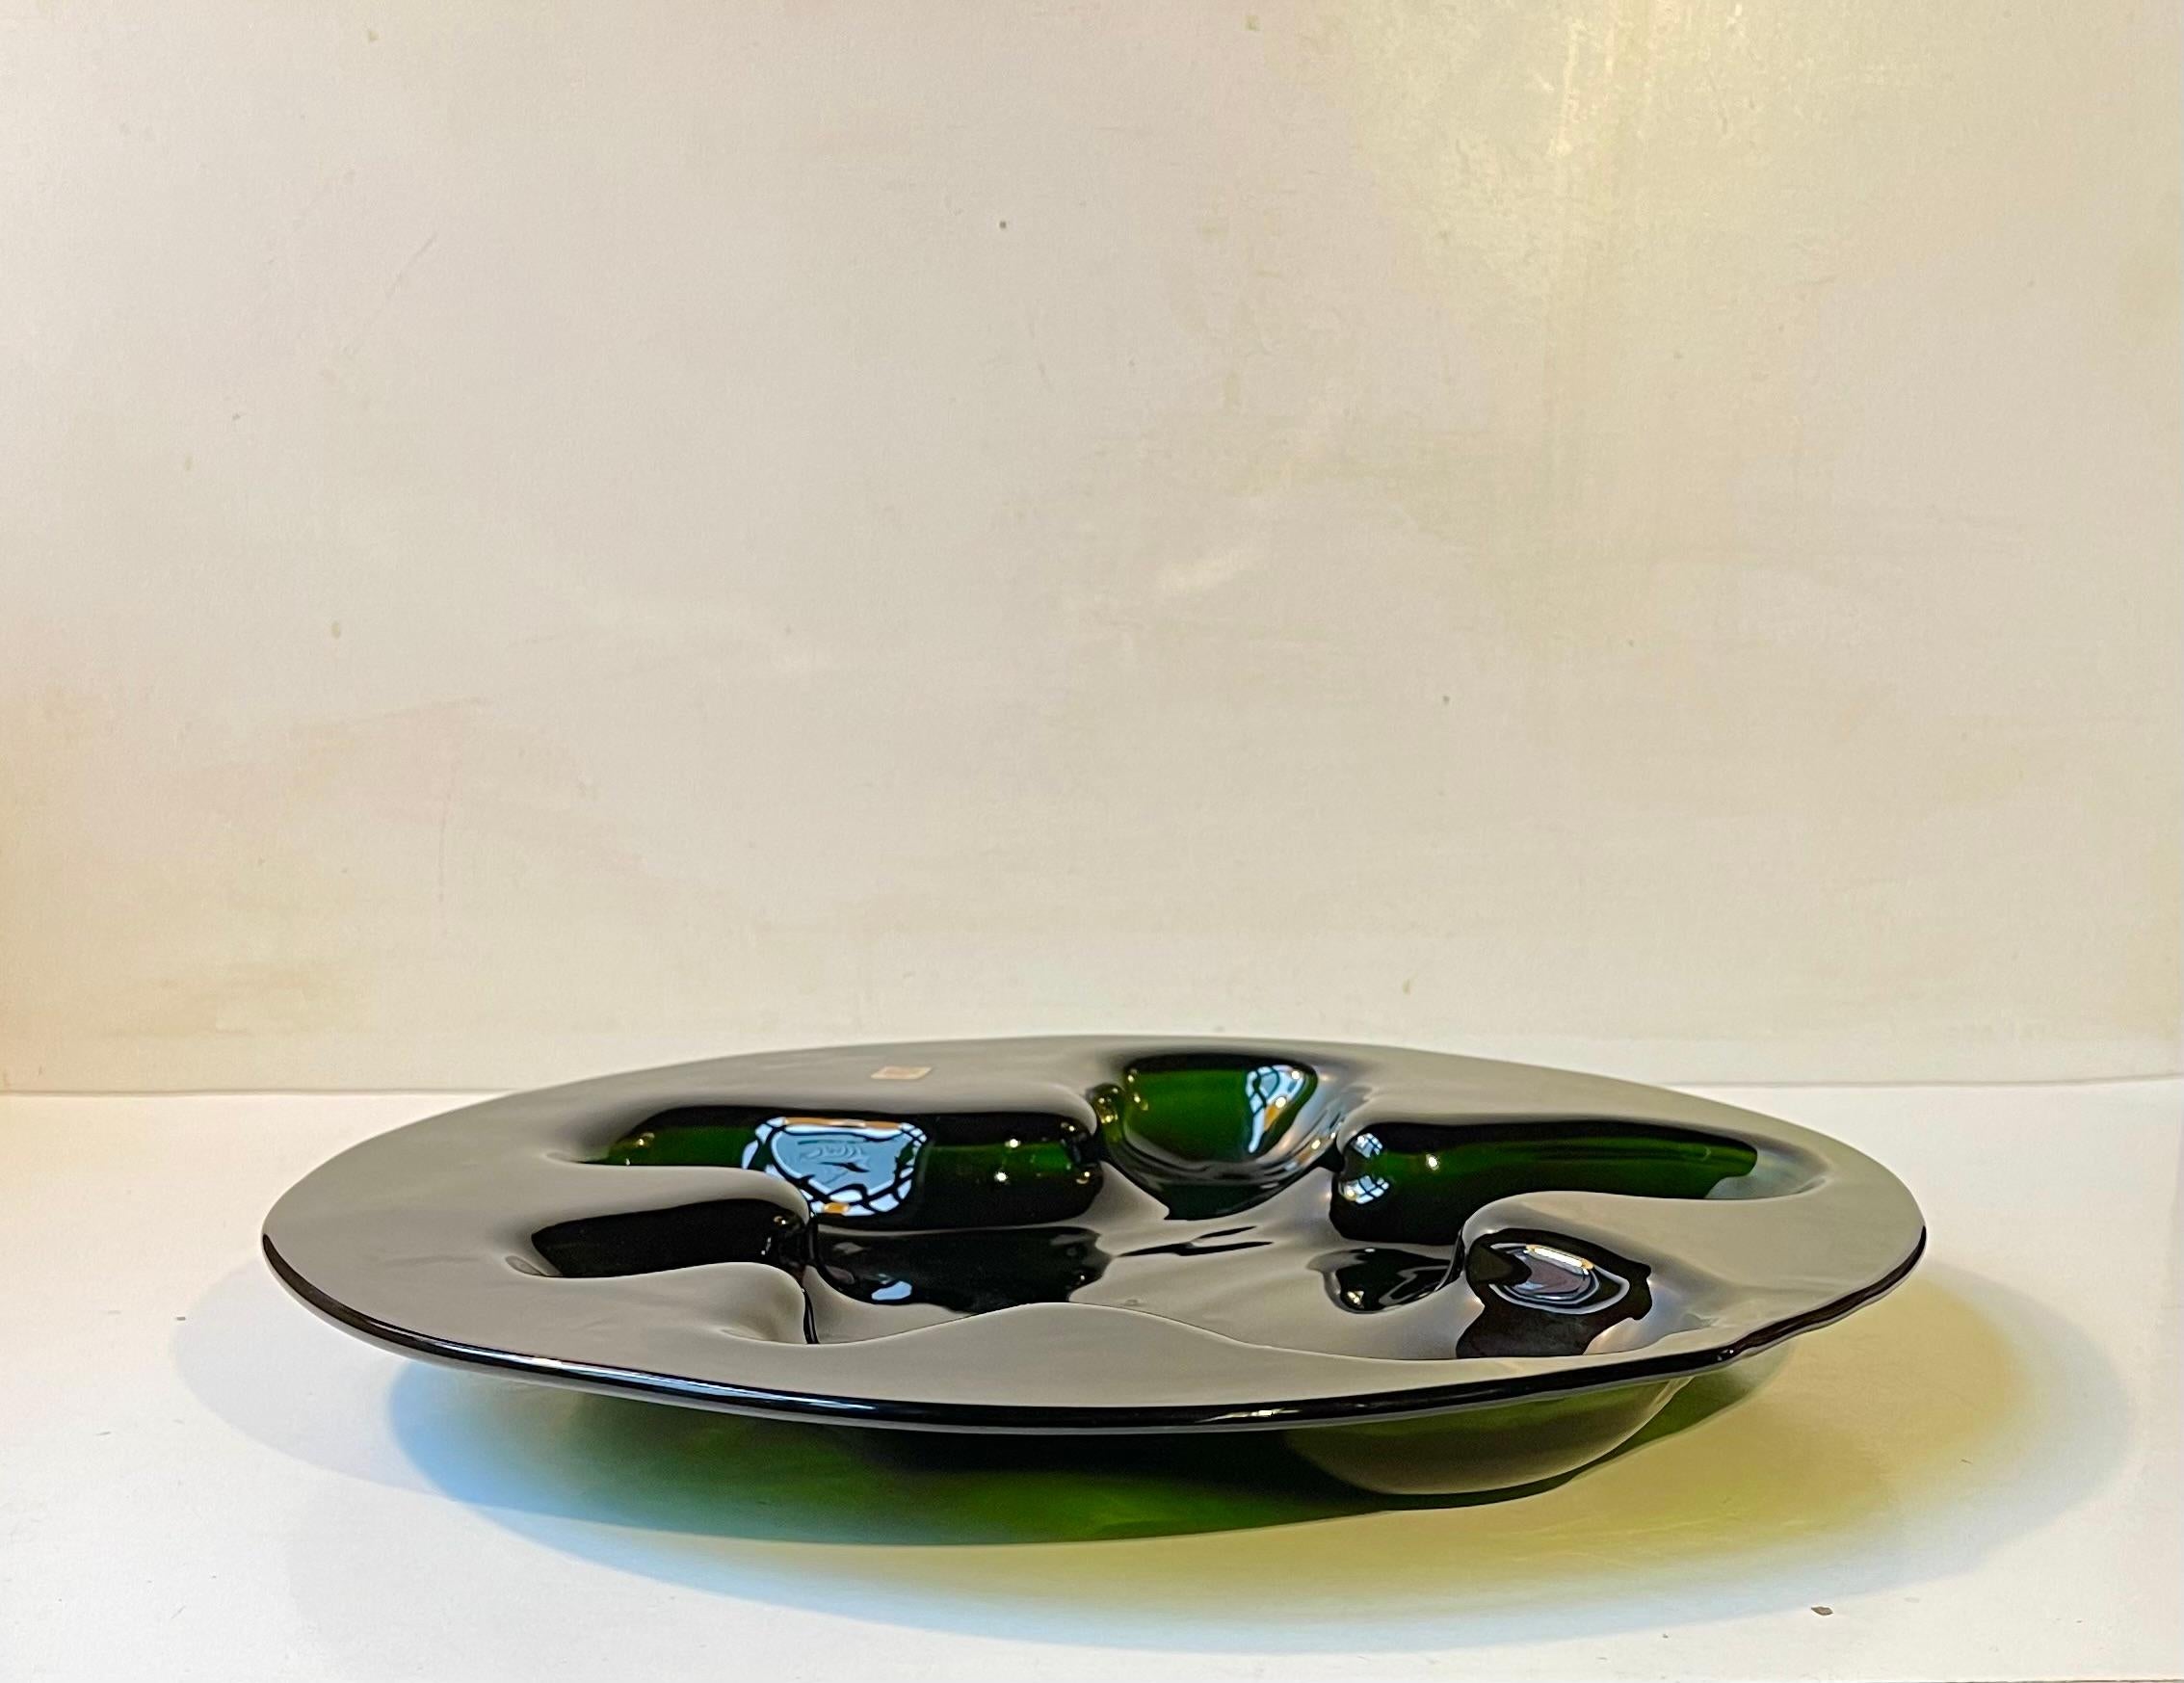 Le plus grand plat de composition florale Ikebana de Holmegaard. Sa couleur est appelée vert jade et il présente un motif abstrait à 6 compartiments reliés entre eux. Conçu et soufflé par Michael Bang au début et au milieu des années 1970.